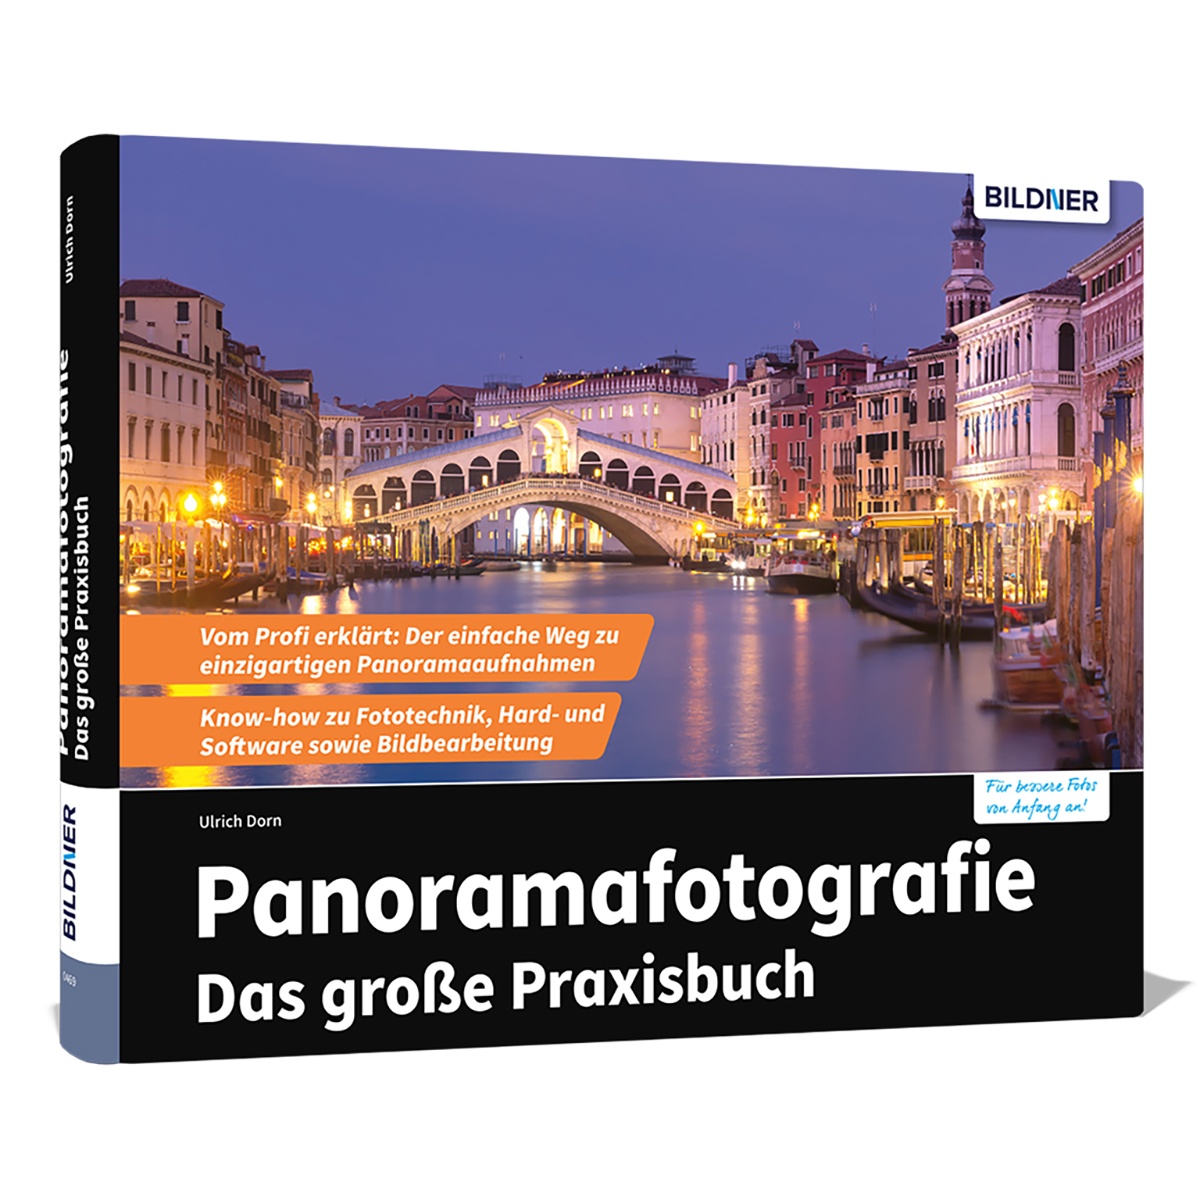 Praxisbuch große - Das Panoramafotografie